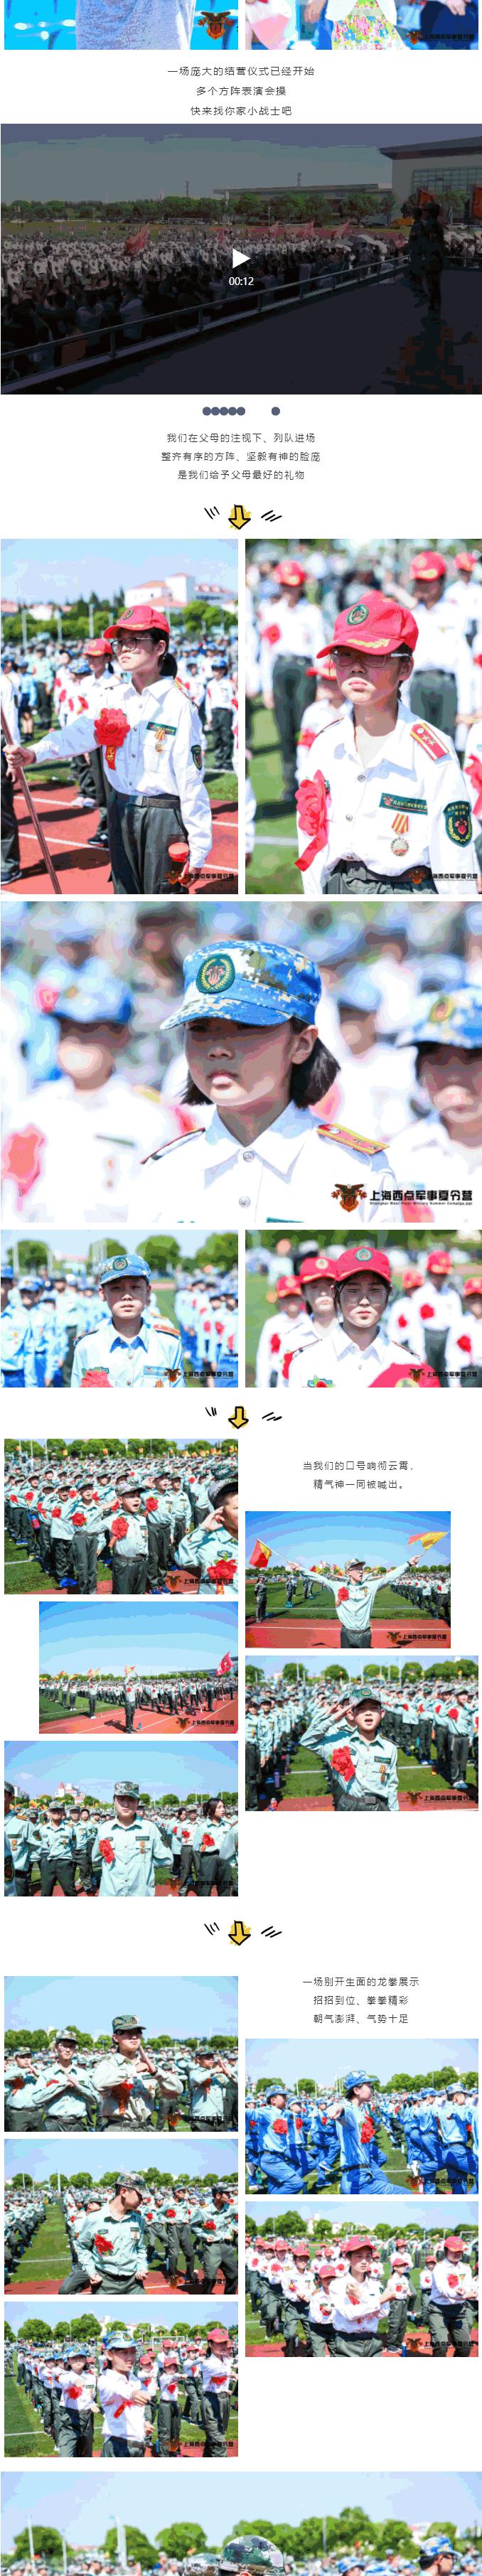 2019上海西点军事夏令营第五期结营仪式